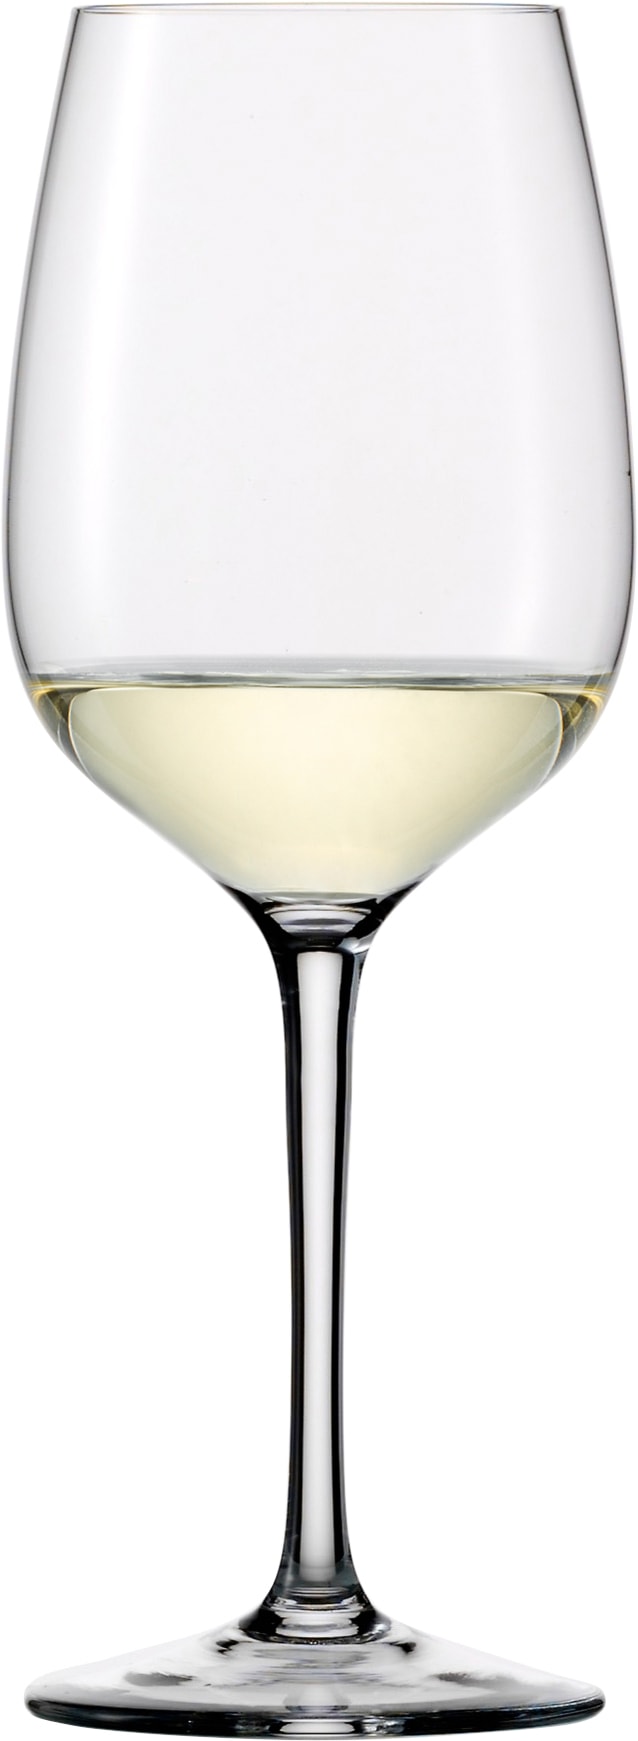 Eisch Weißweinglas »Superior SensisPlus«, (Set, 4 tlg.), (Chardonnayglas), bleifrei, 420 ml, 4-teilig